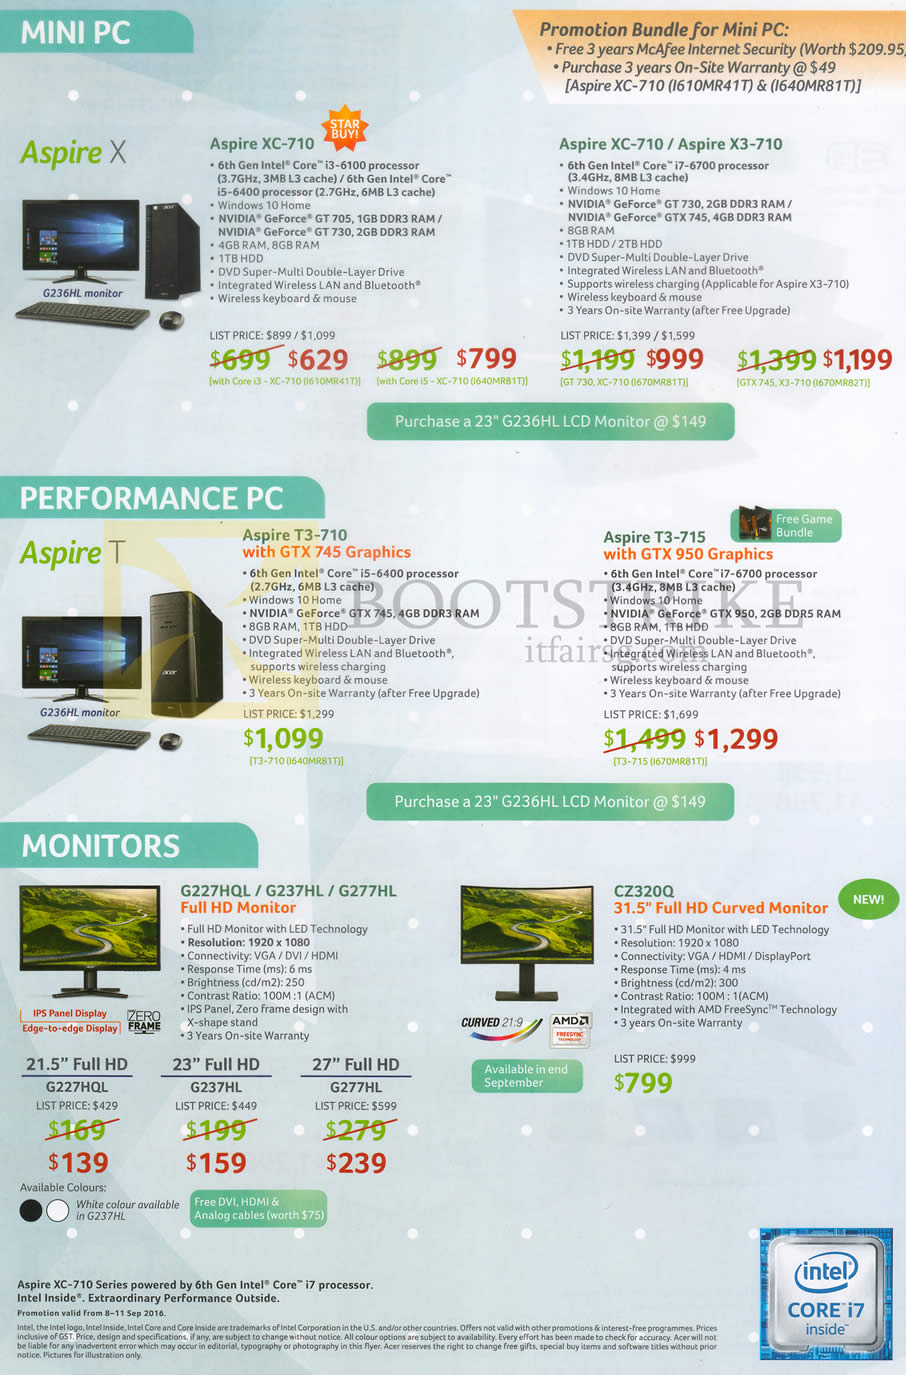 COMEX 2016 price list image brochure of Acer Desktop PCs, Monitors, Aspire XC-710, X3-710, T3-710, T3-715. G227HQL, G237HL, G277HL, CZ320Q, G227HQL, G237HL, G277HL